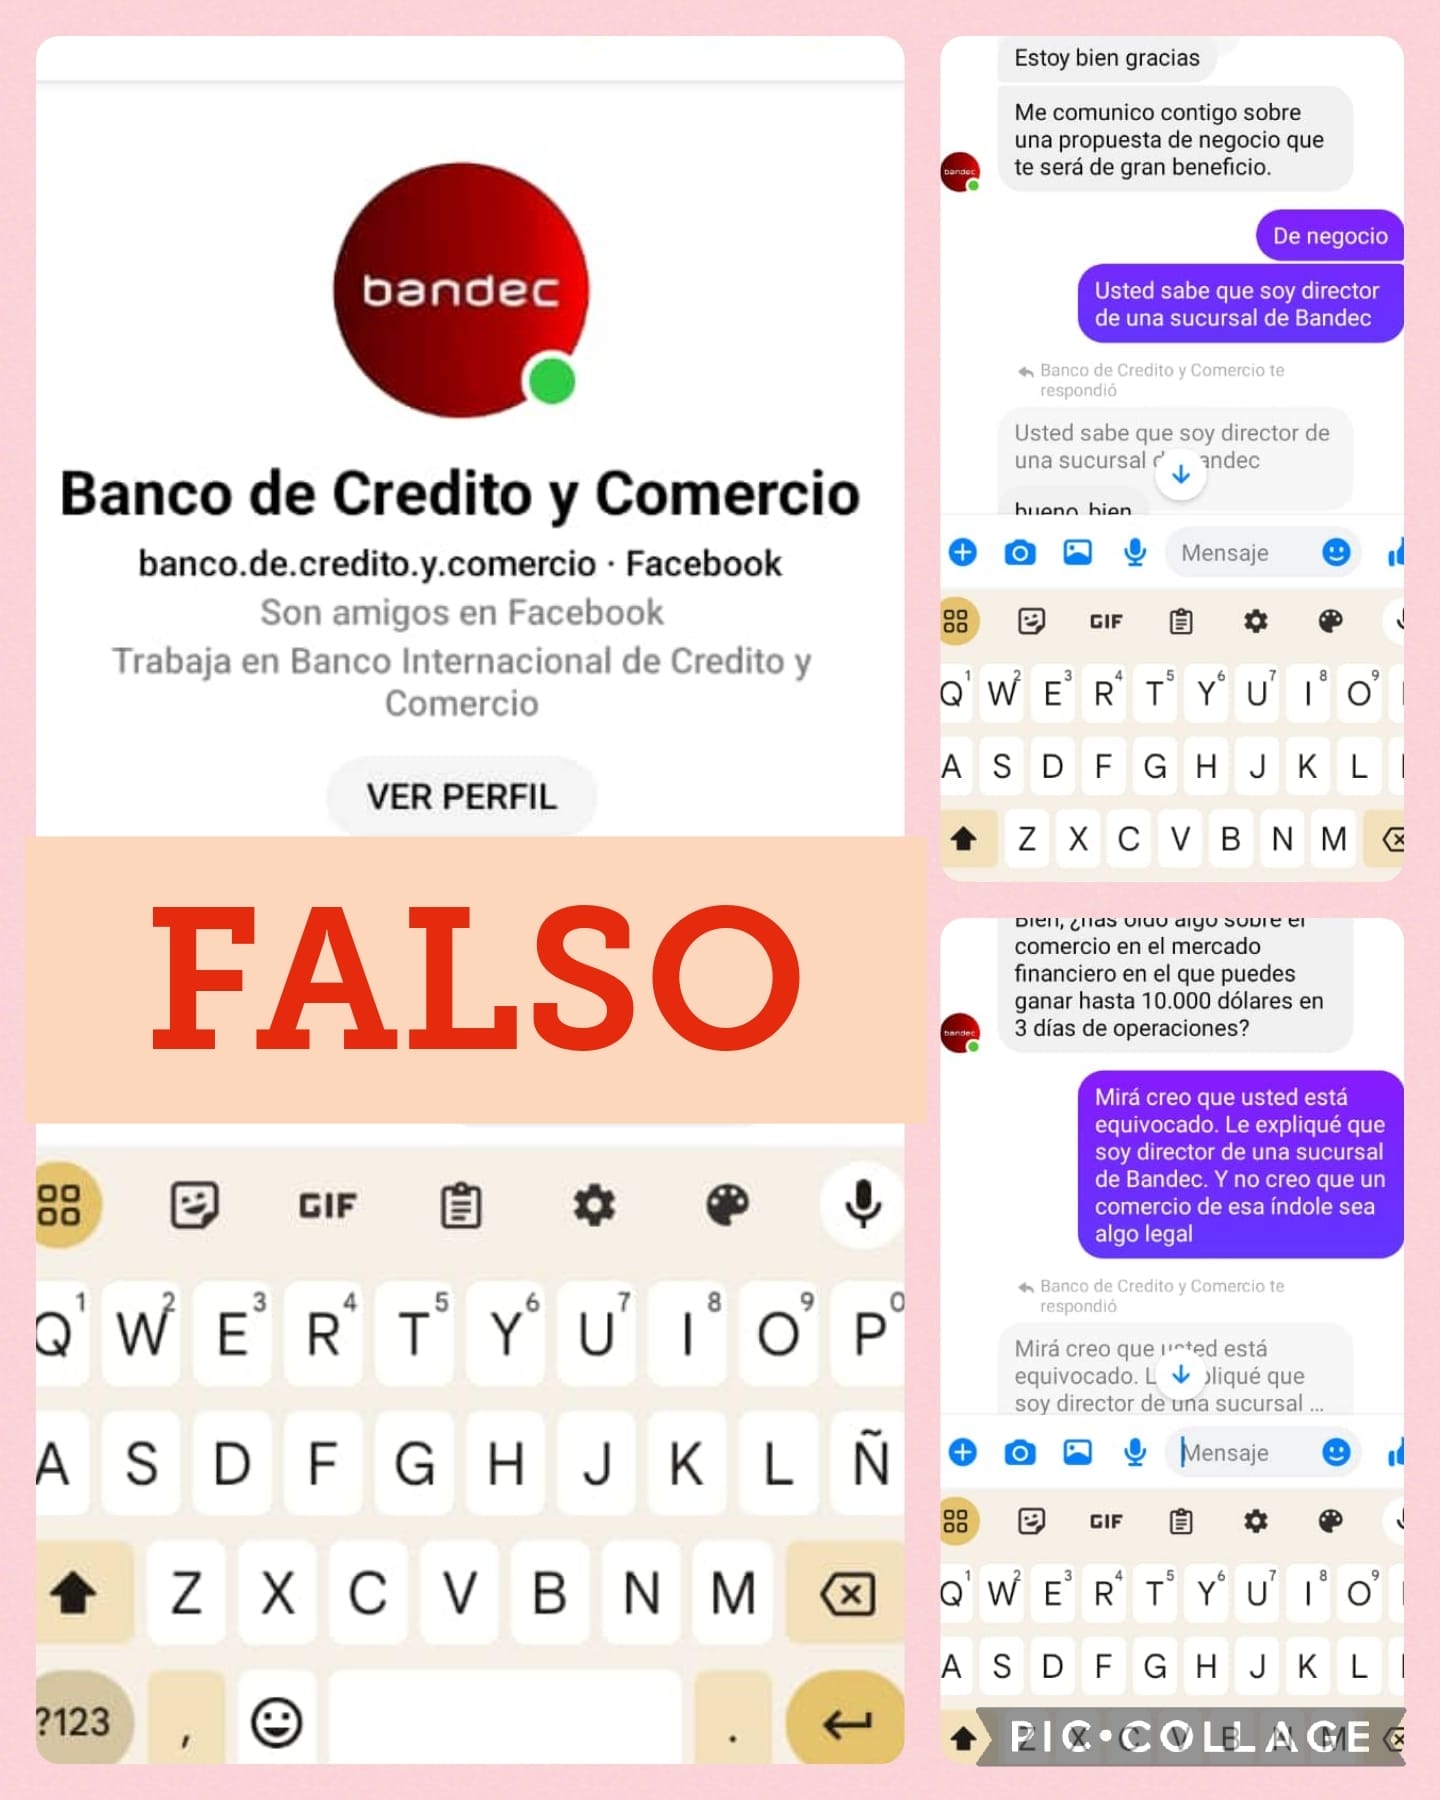 El Banco de Crédito y Comercio de Cuba (Bandec) ha informado sobre la presencia de un perfil falso en las redes sociales asociado a su nombre. 
